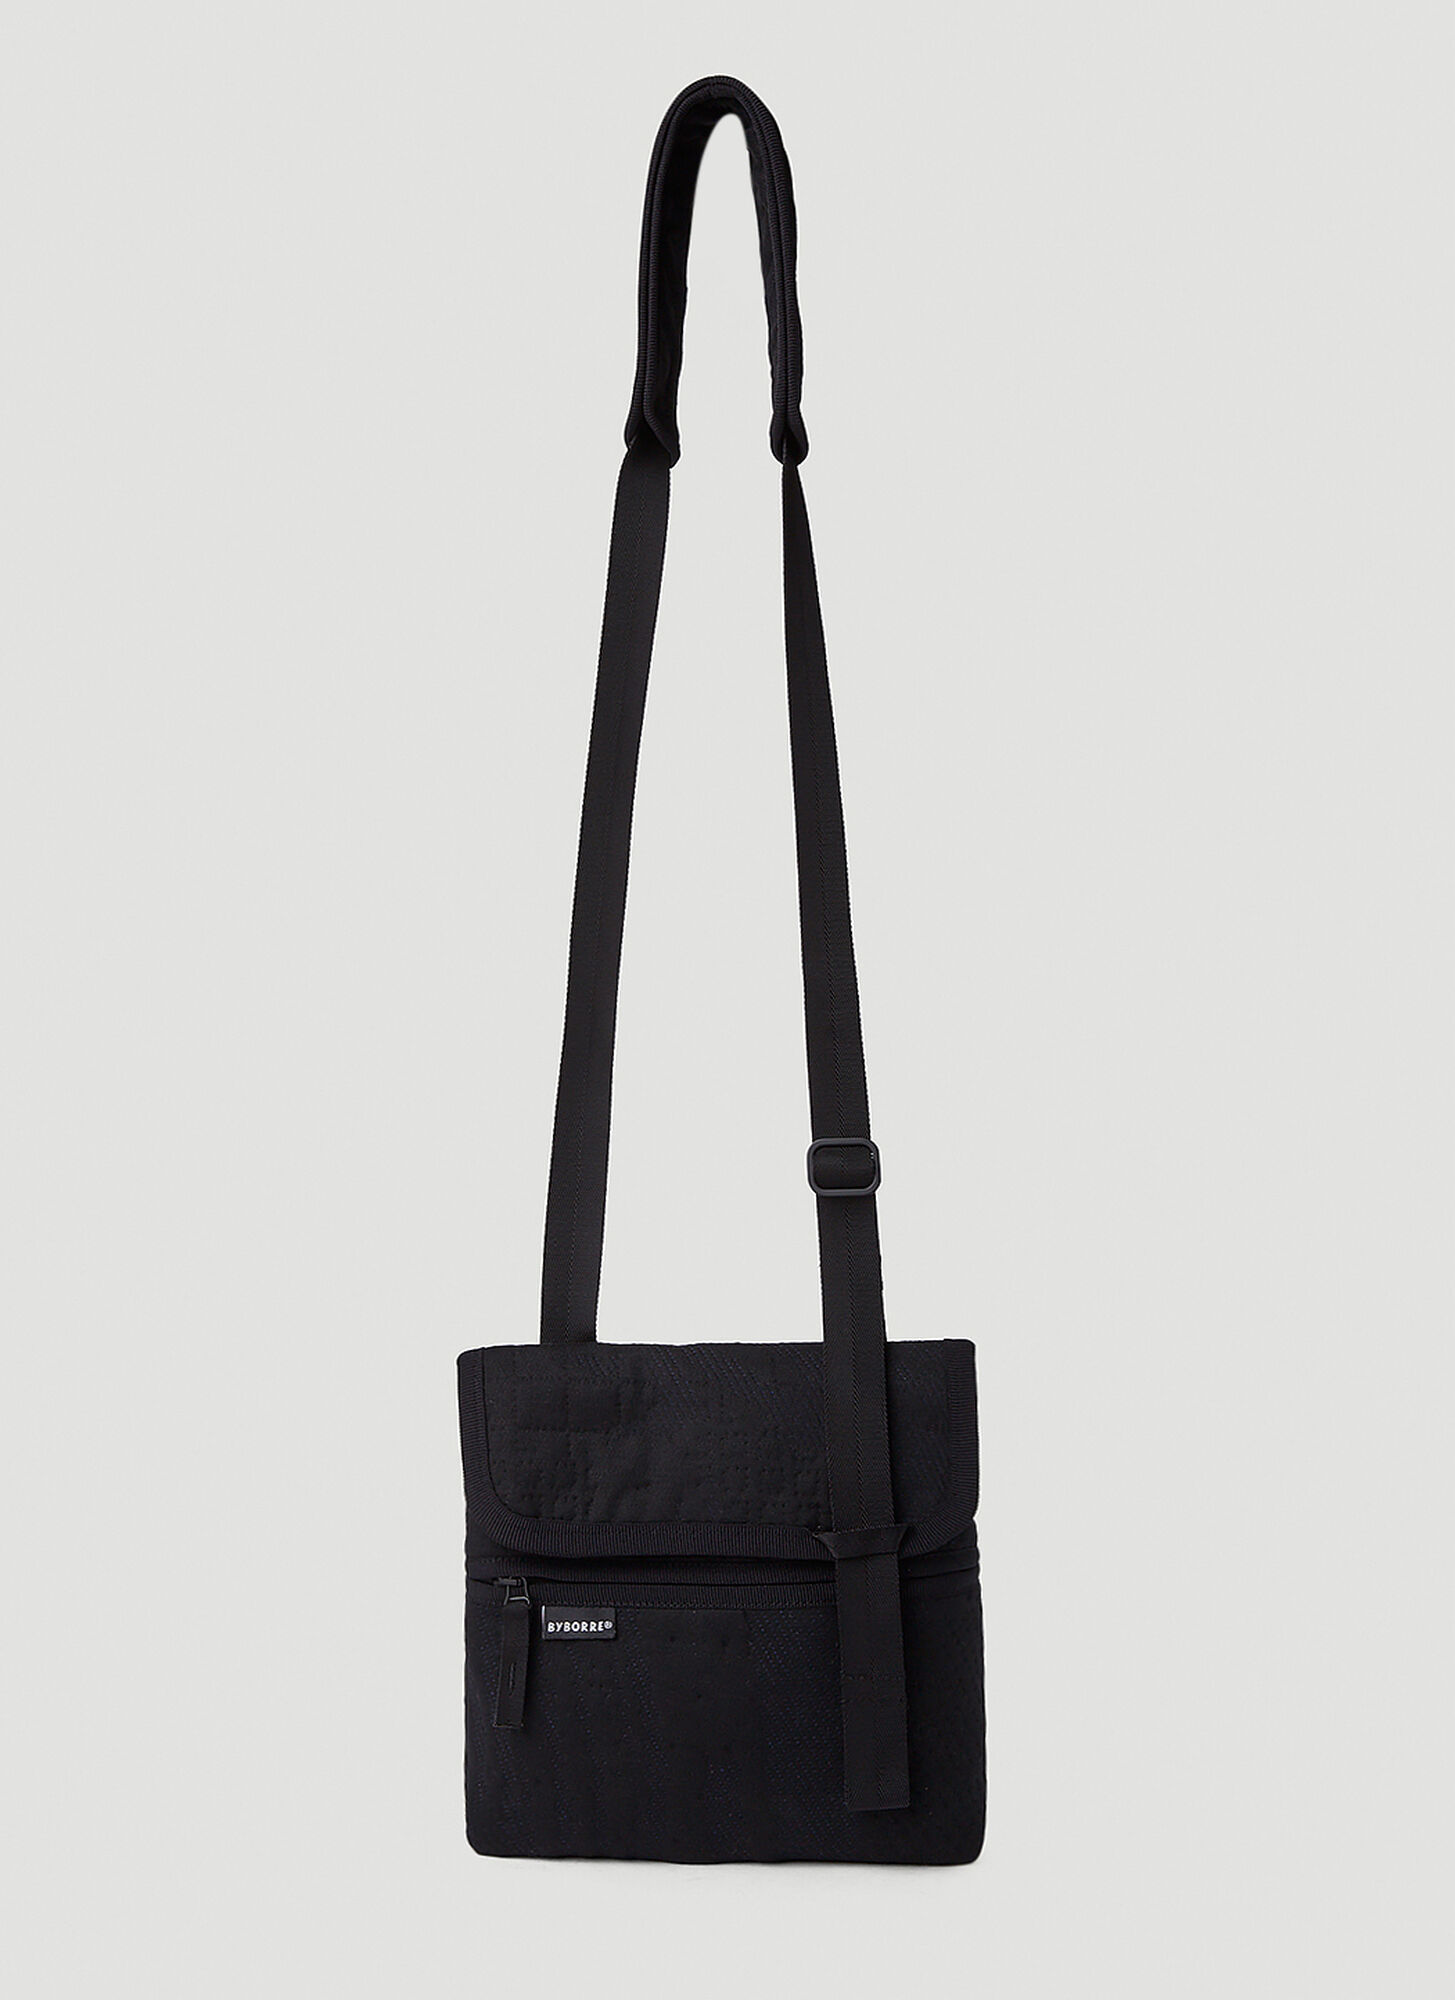 Byborre Satchel Crossbody Bag In Black